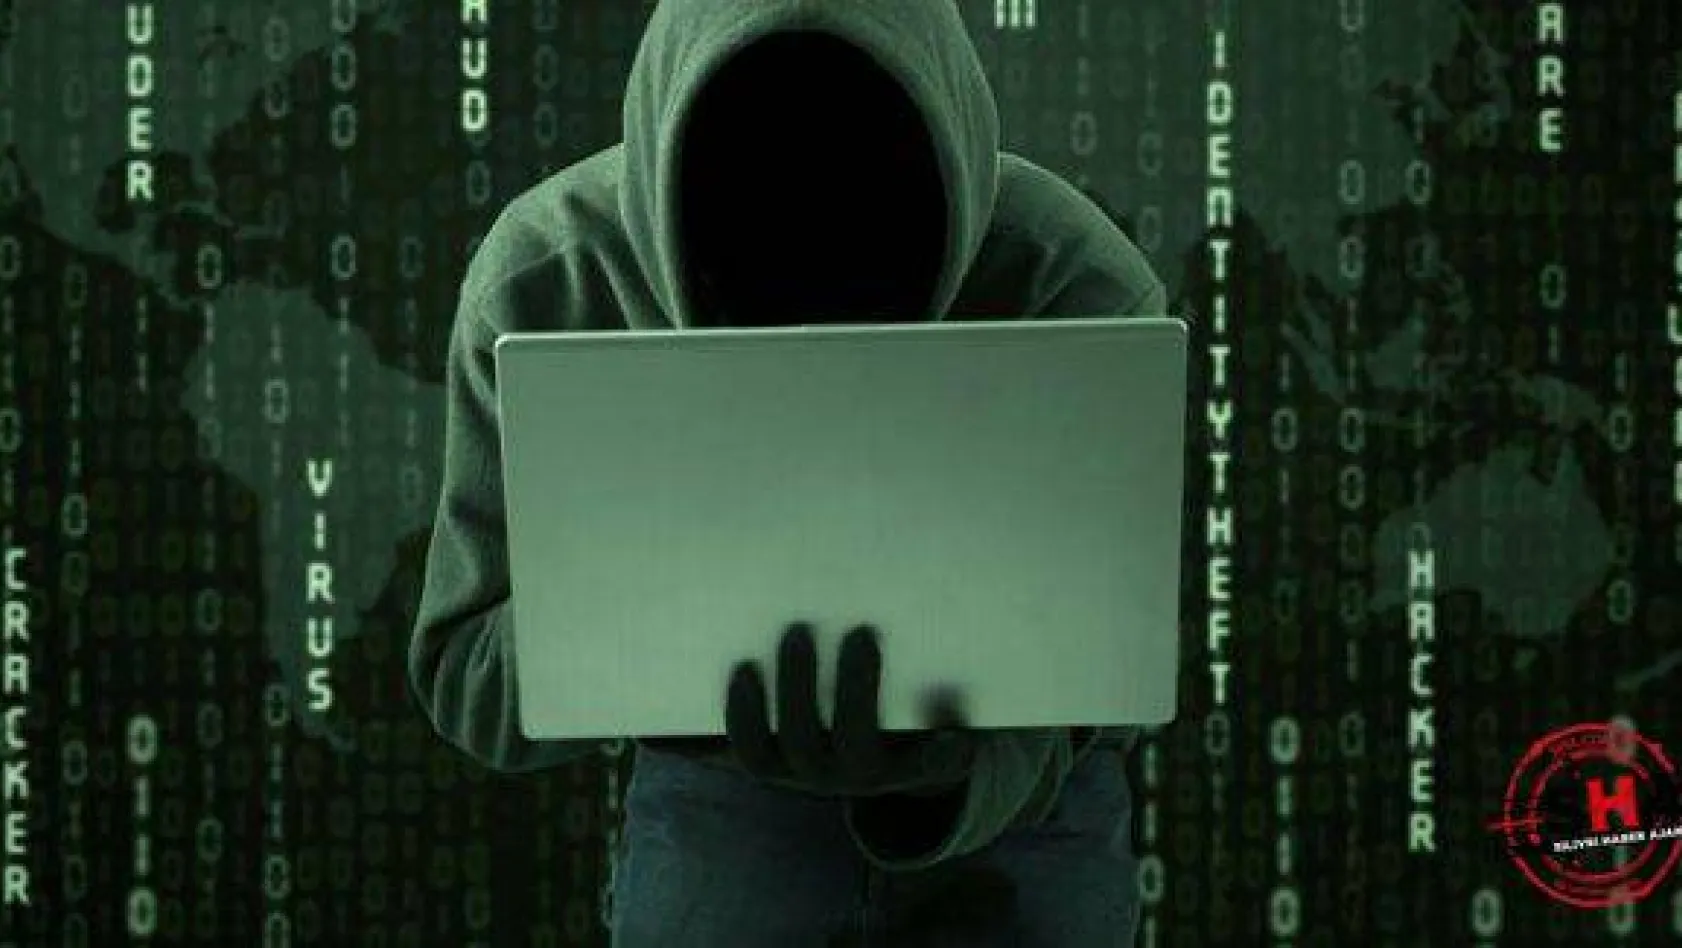 Türk hackerdan Rusya'ya tarihin en büyük siber saldırısı